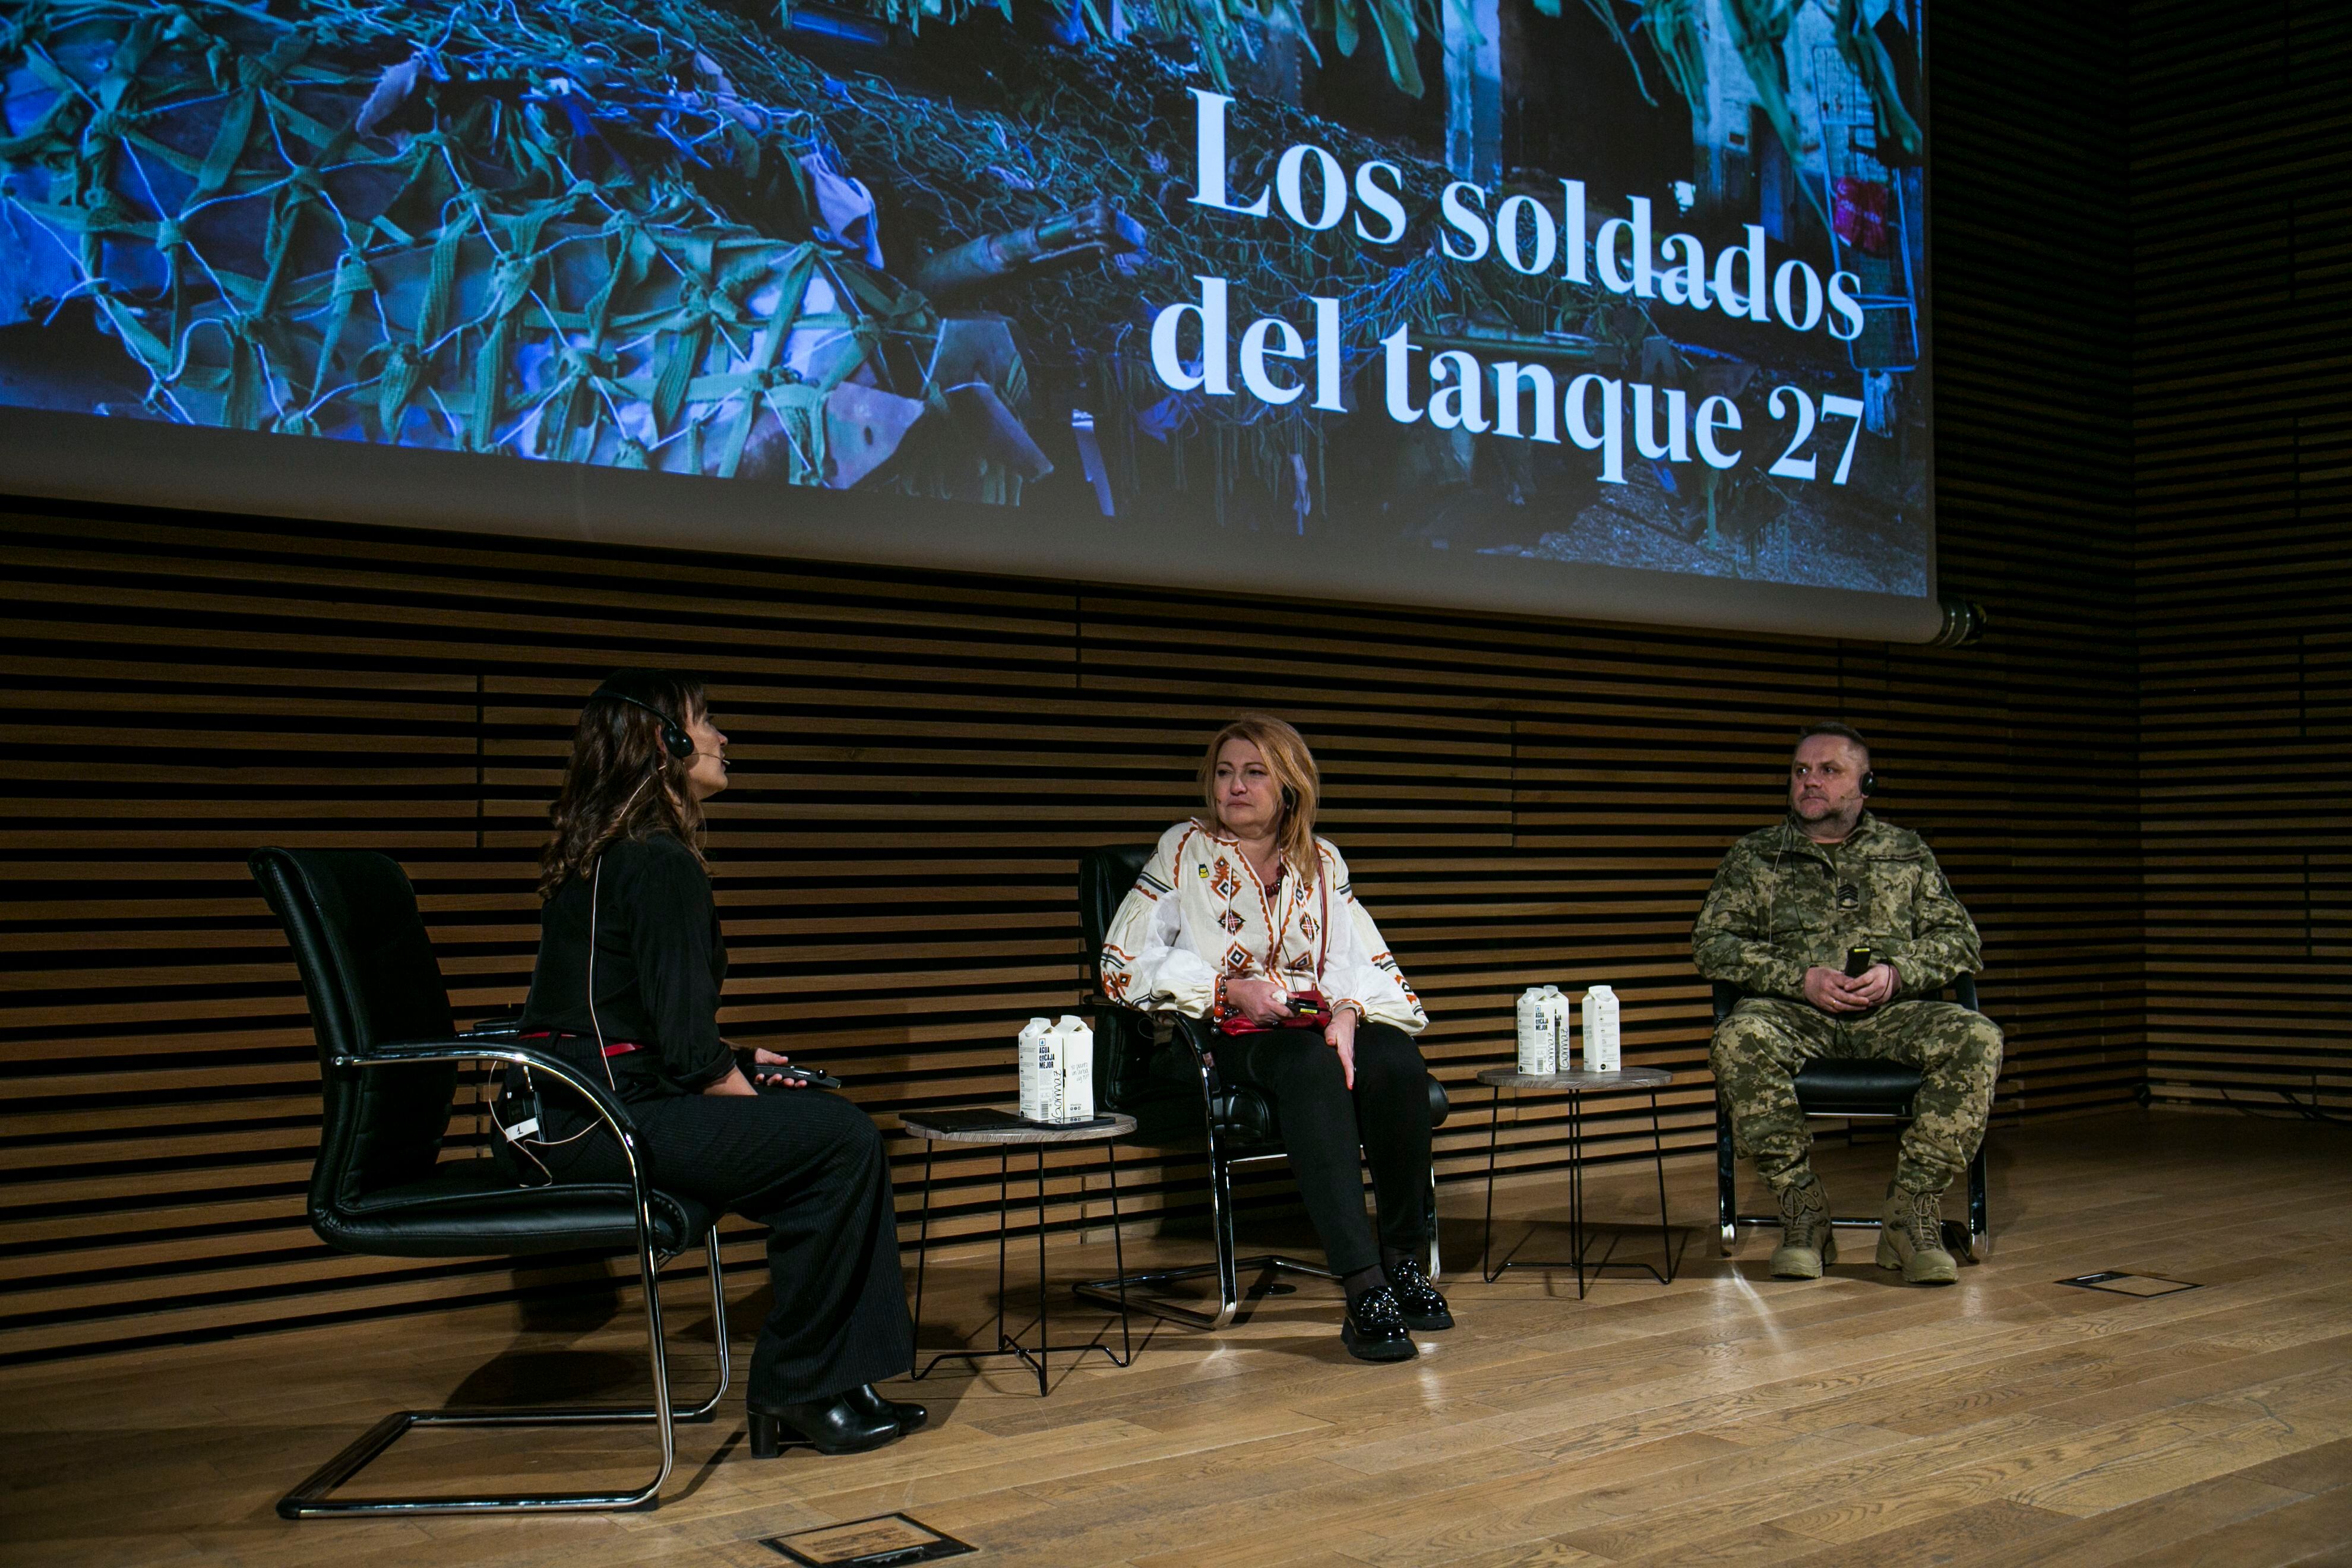 Mónica Ceberio, directora del documental, charla con Volodímir Orenchak y su esposa, Ola, durante la presentación de ‘Los soldados del tanque 27’. 